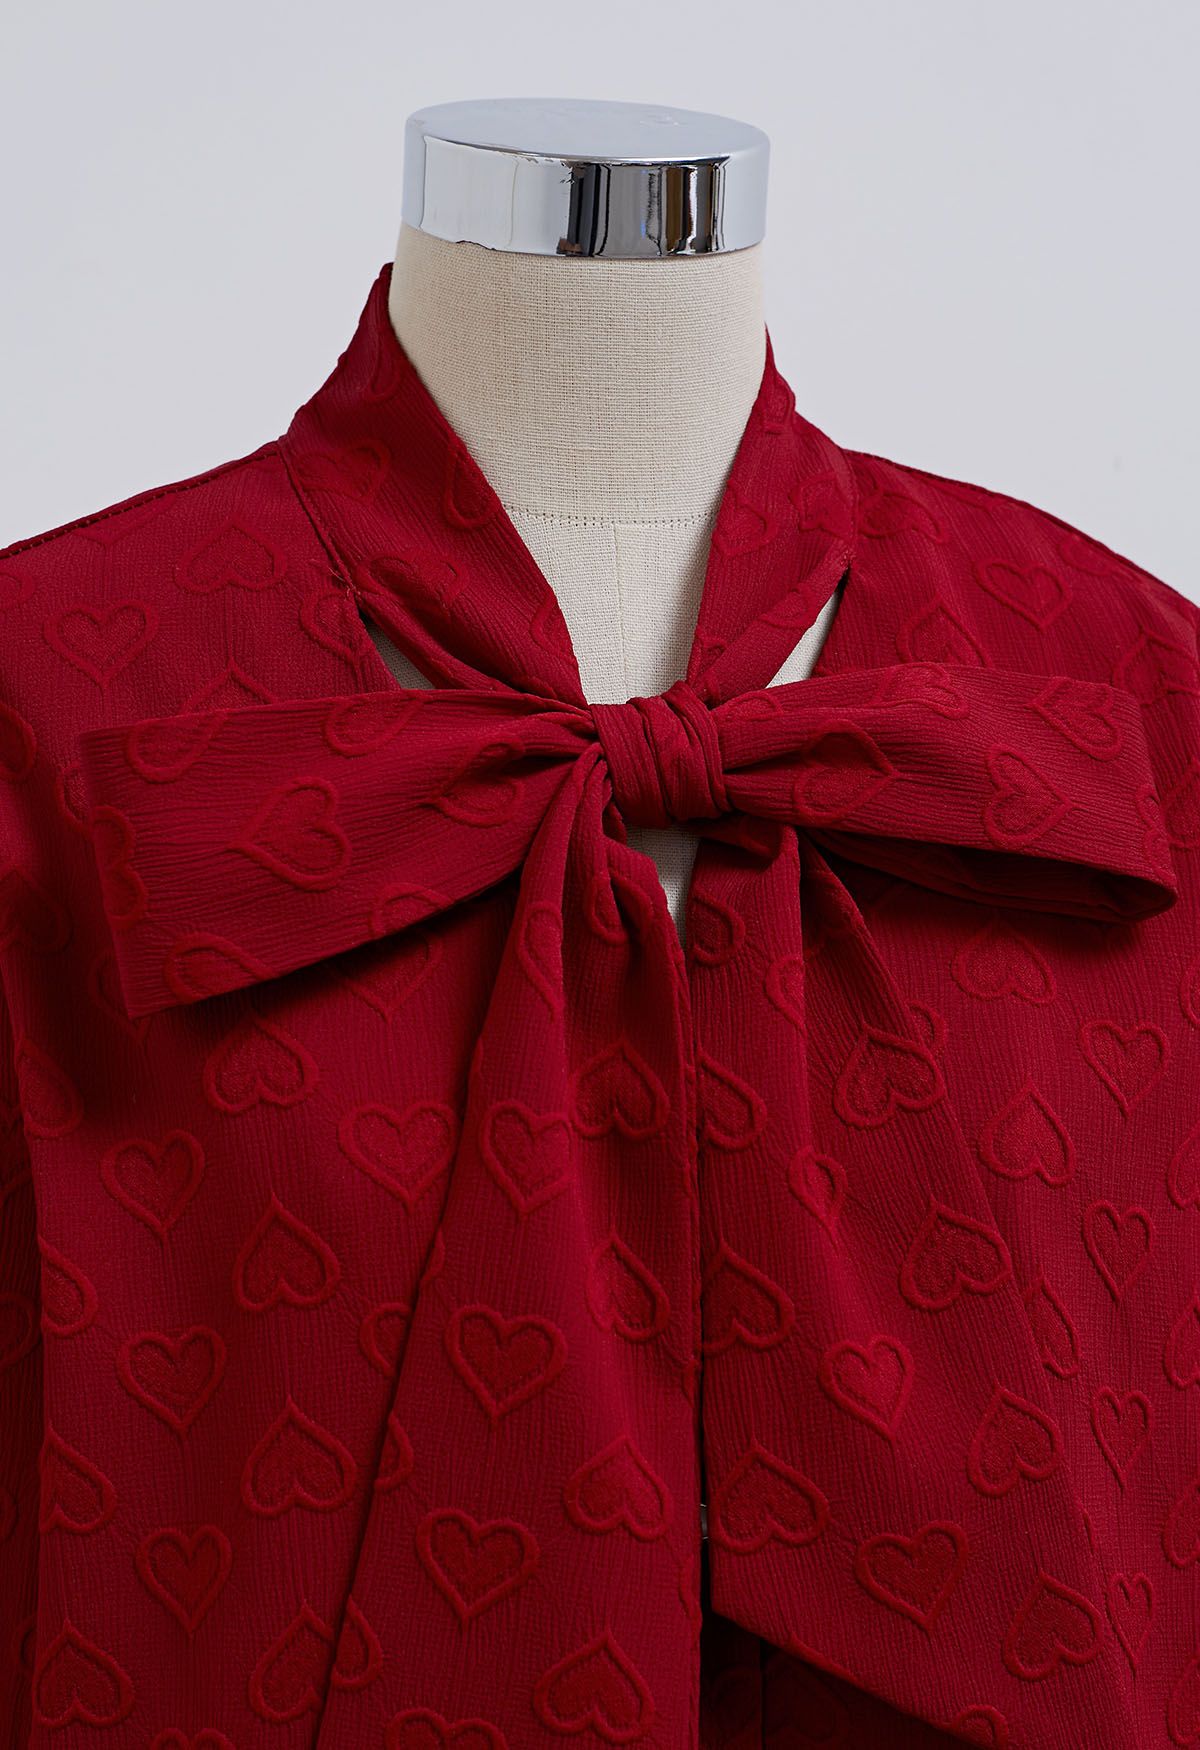 Camisa con botones y escote con lazo en forma de corazón rojo de ensueño